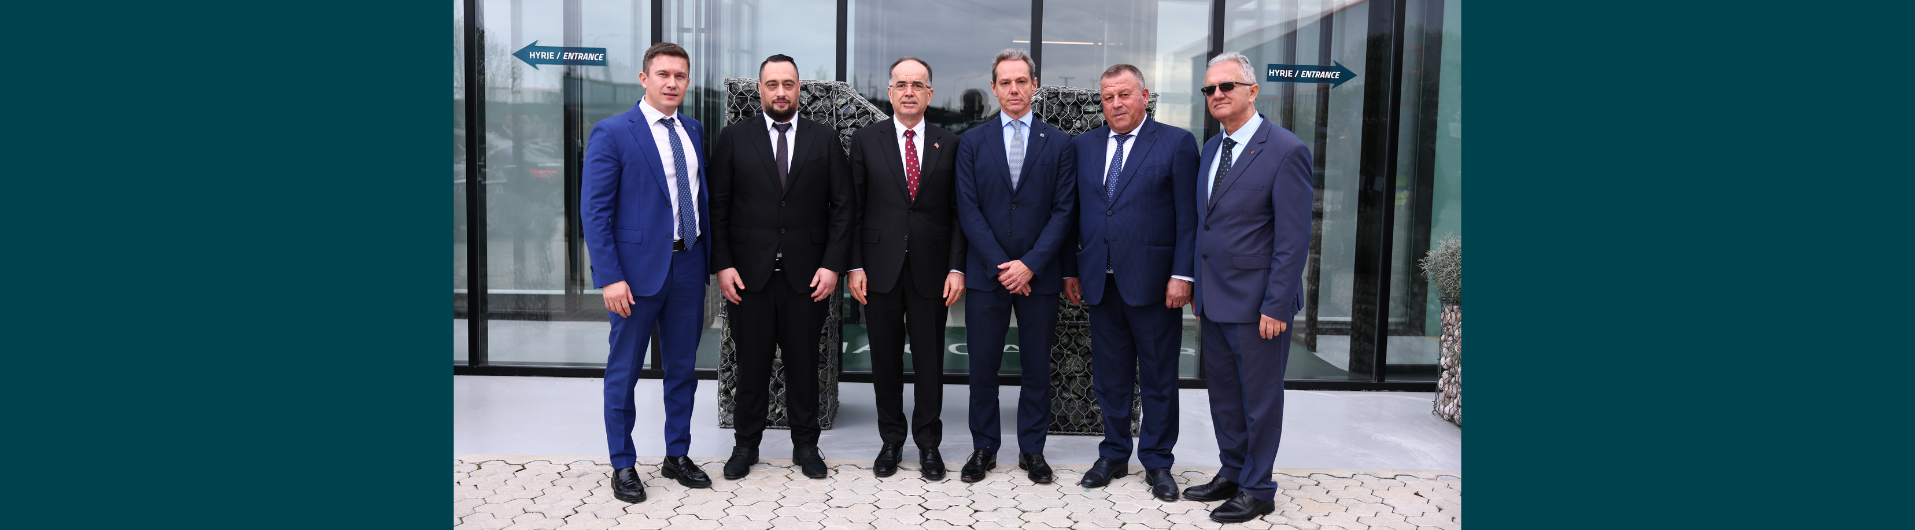 Presidenti i Republikës së Shqipërisë Bajram Begaj viziton fabrikën e Maccaferri Balkans